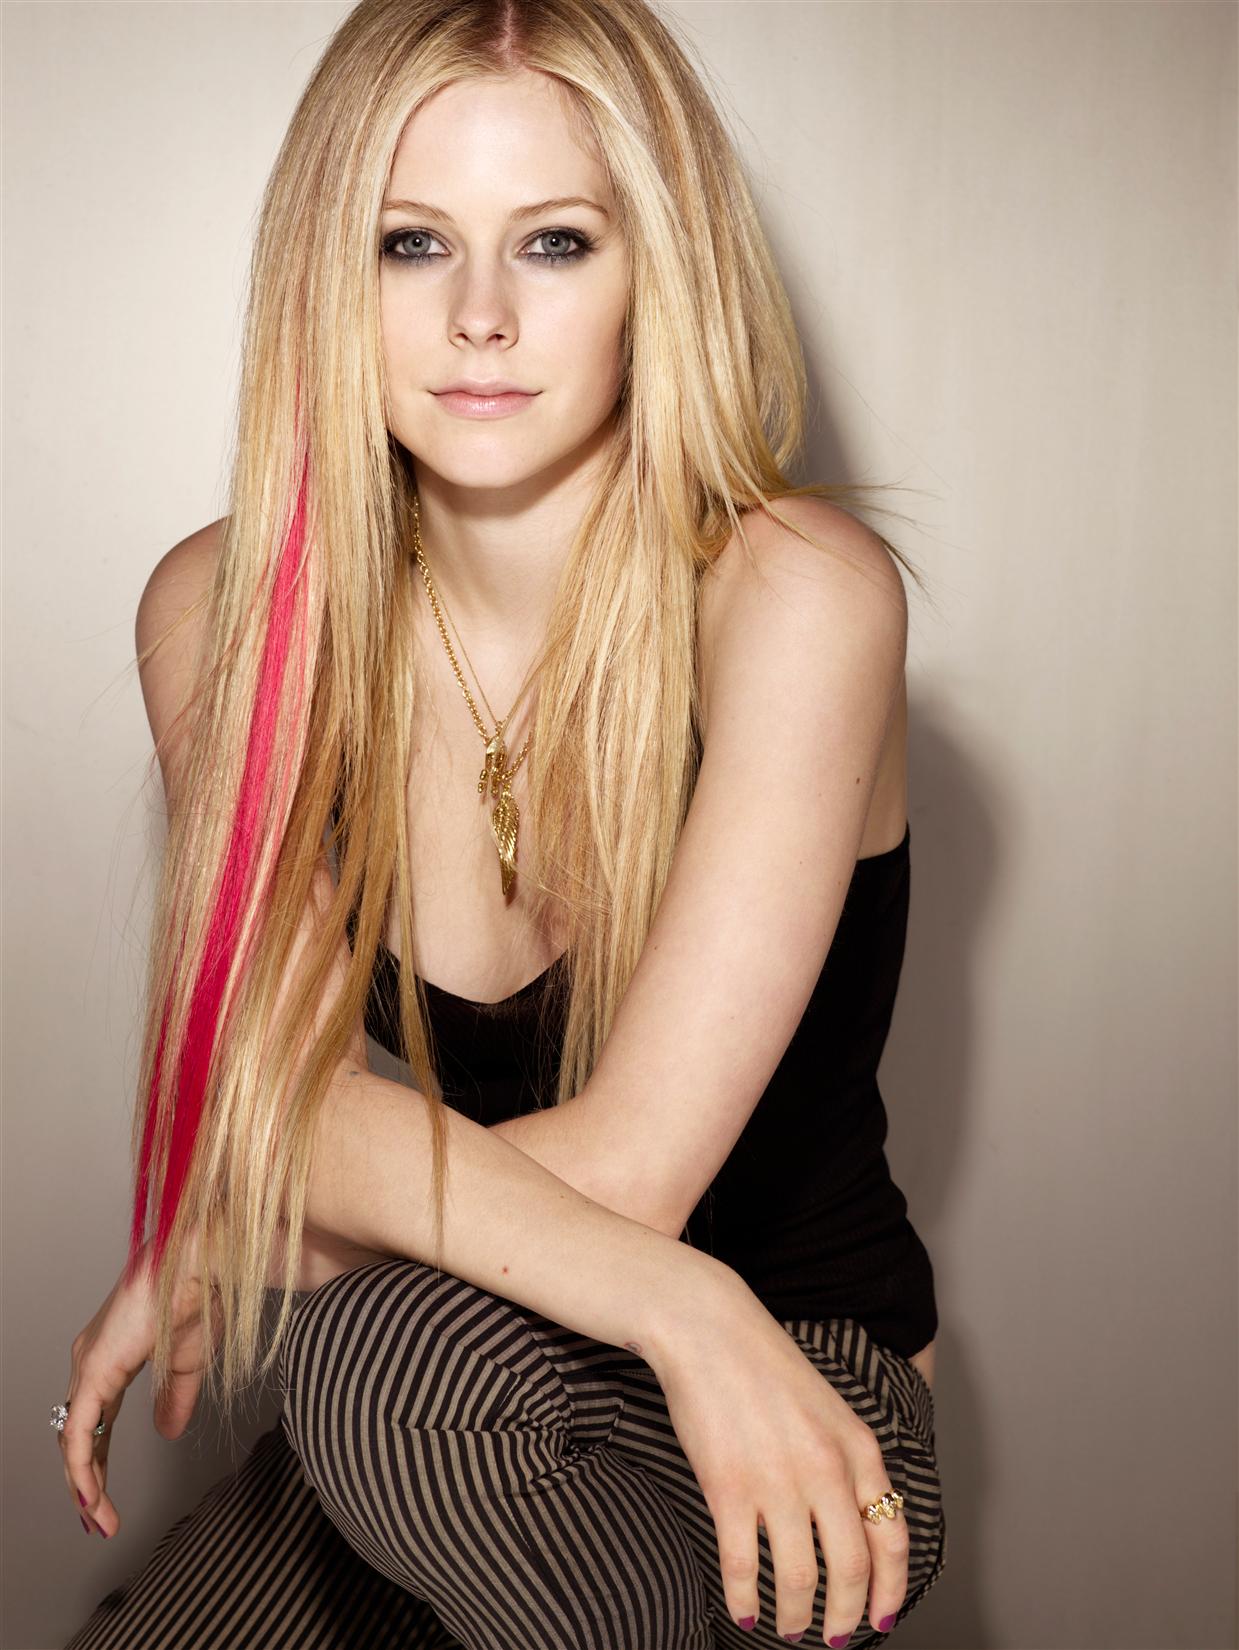 Avril Lavigne Instagram. 